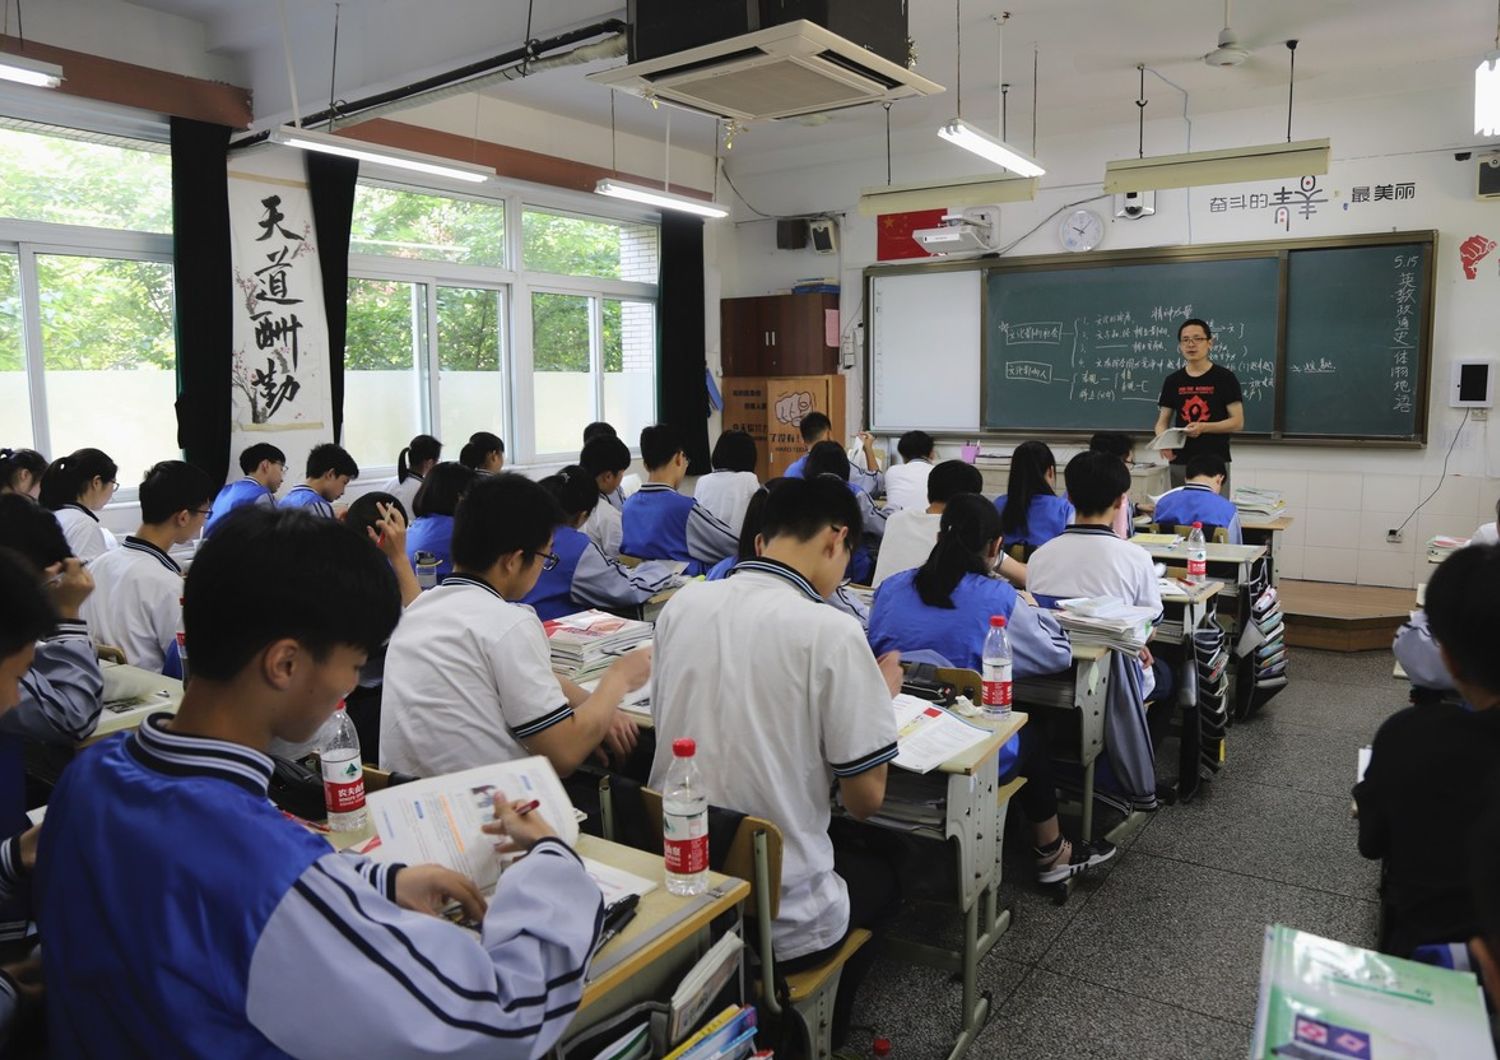 &nbsp;Una classe del liceo 11 di Hangzhou in cui &egrave; stato attivato il riconoscimento facciale degli studenti